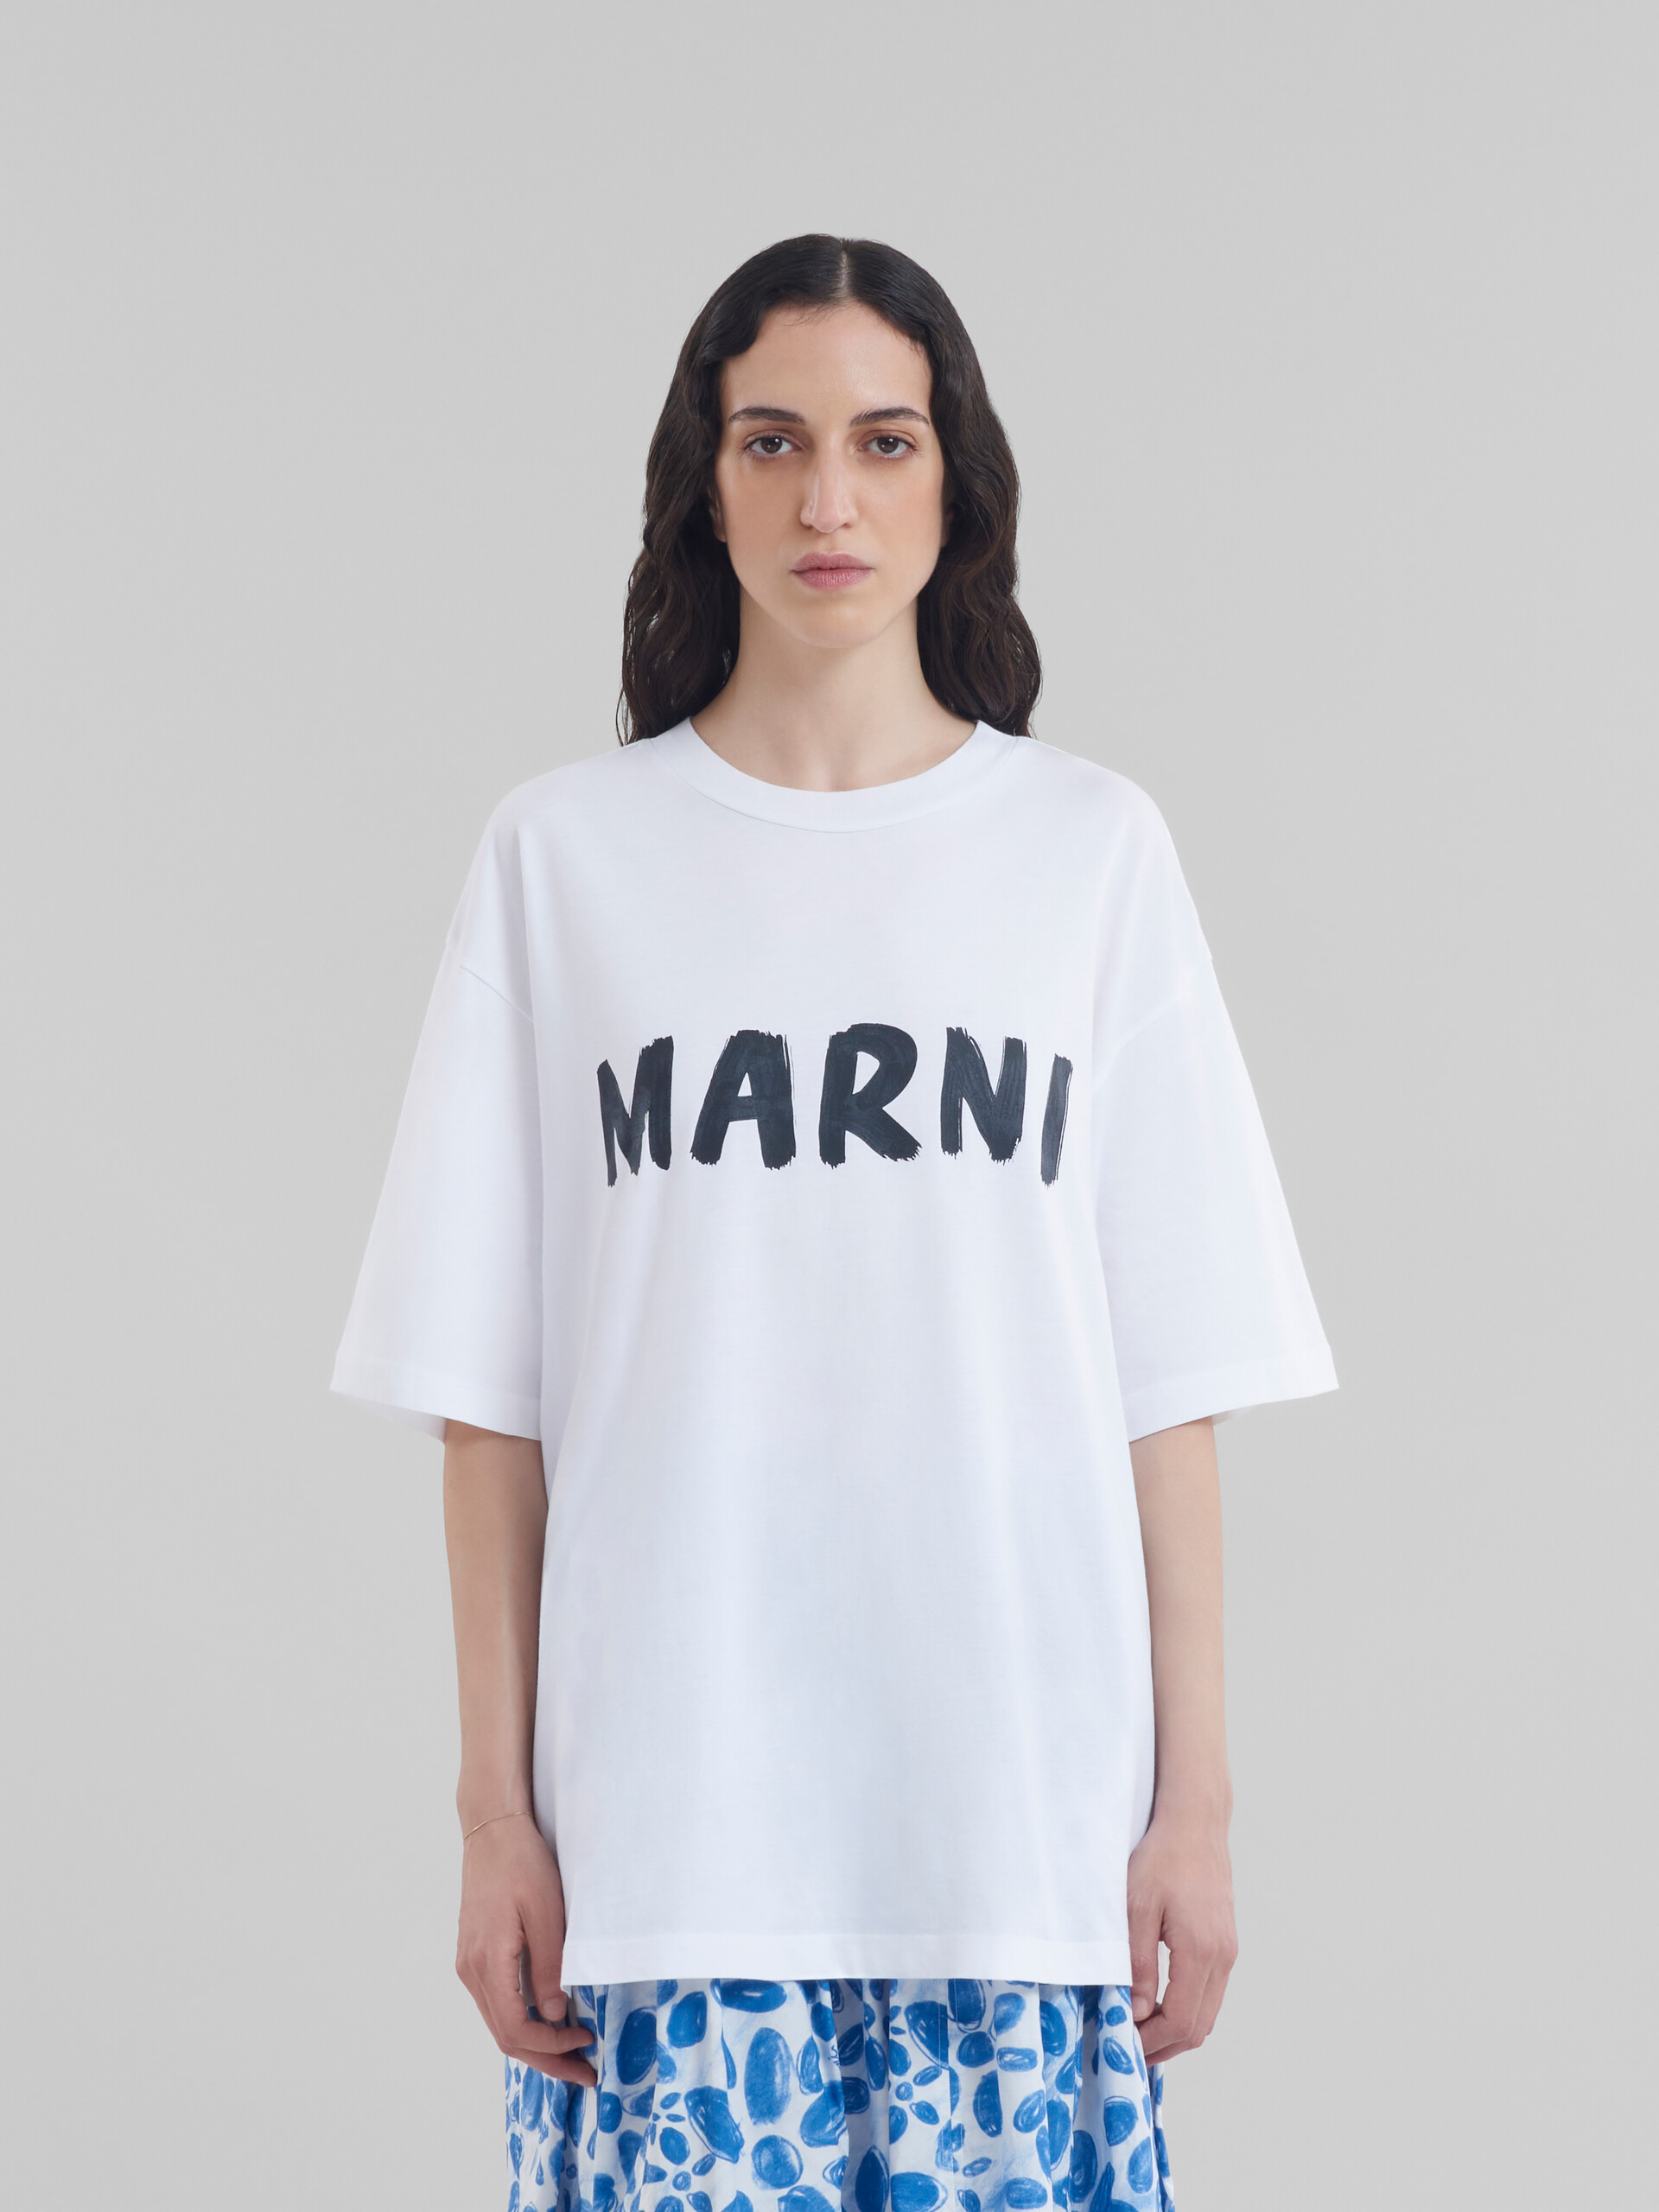 MARNI ロゴ コットン Tシャツ | labiela.com